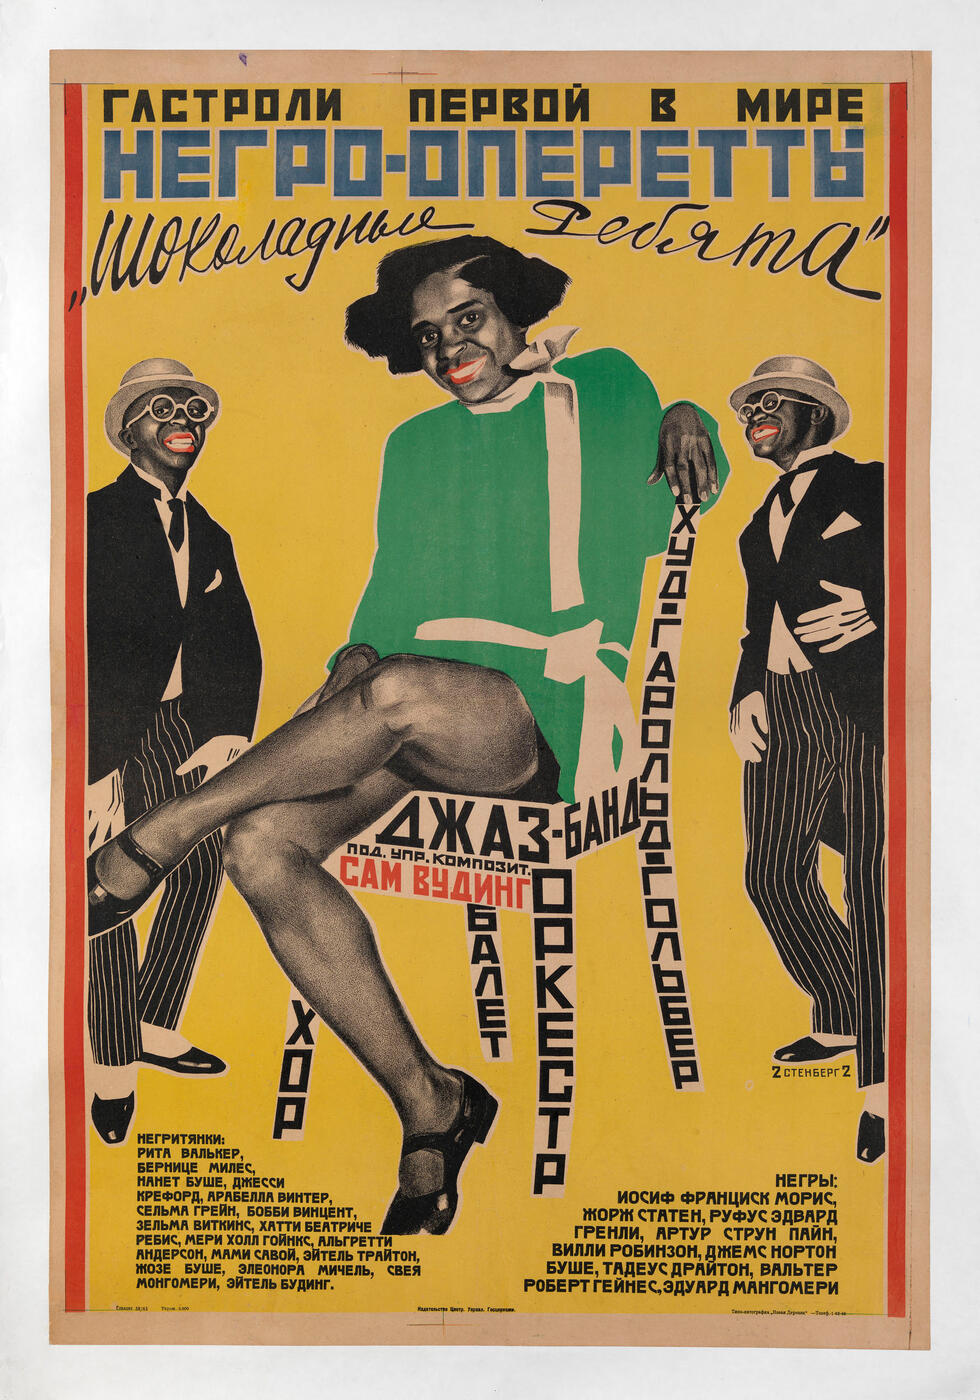 Poster for the Negro-Operetta Performance “Shokoladnye rebyata”